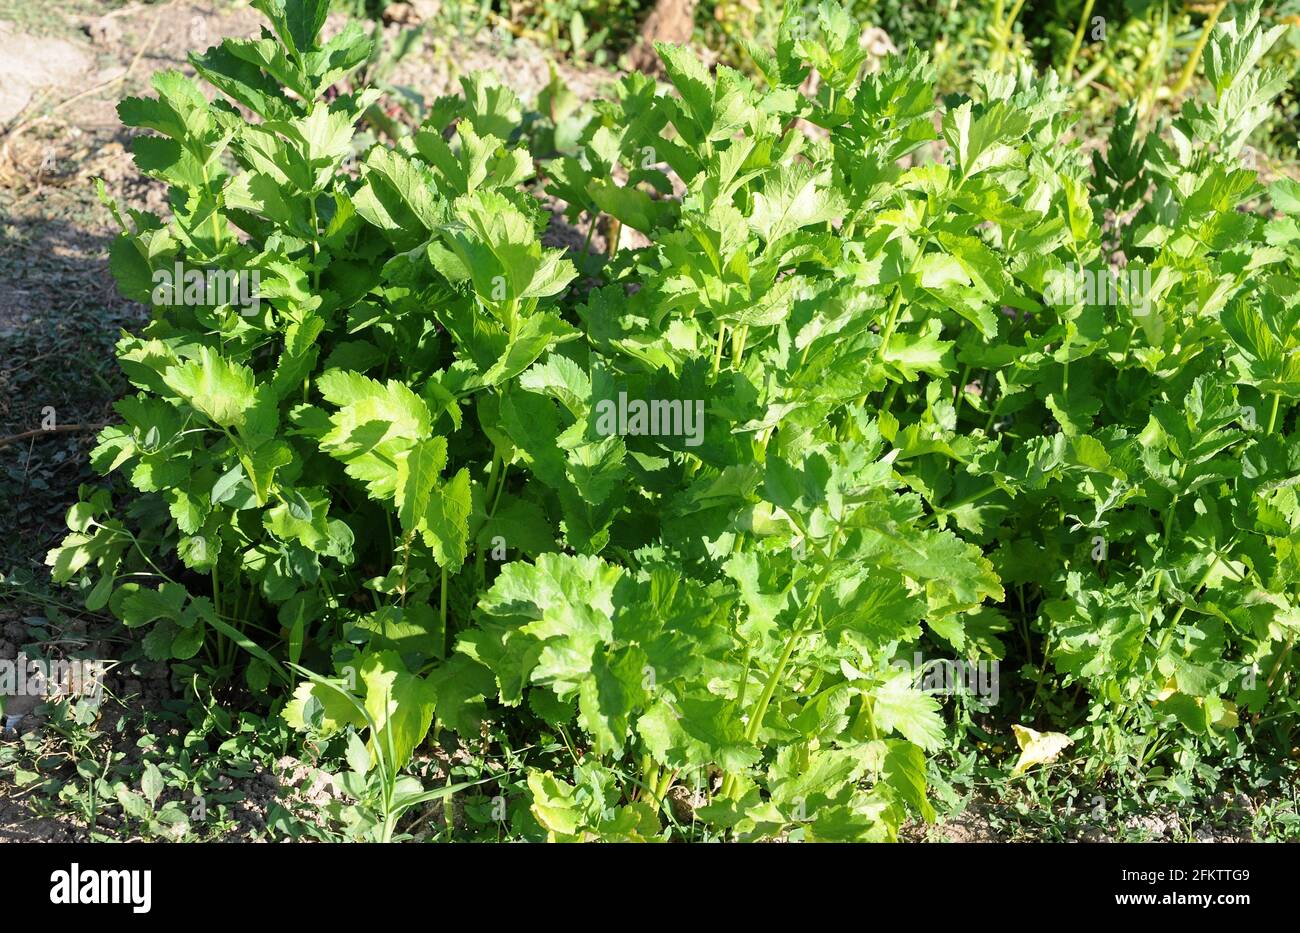 Le Parsnip (Pastinaca sativa) est une plante annuelle ou bisannuelle cultivée pour ses racines comestibles. Banque D'Images